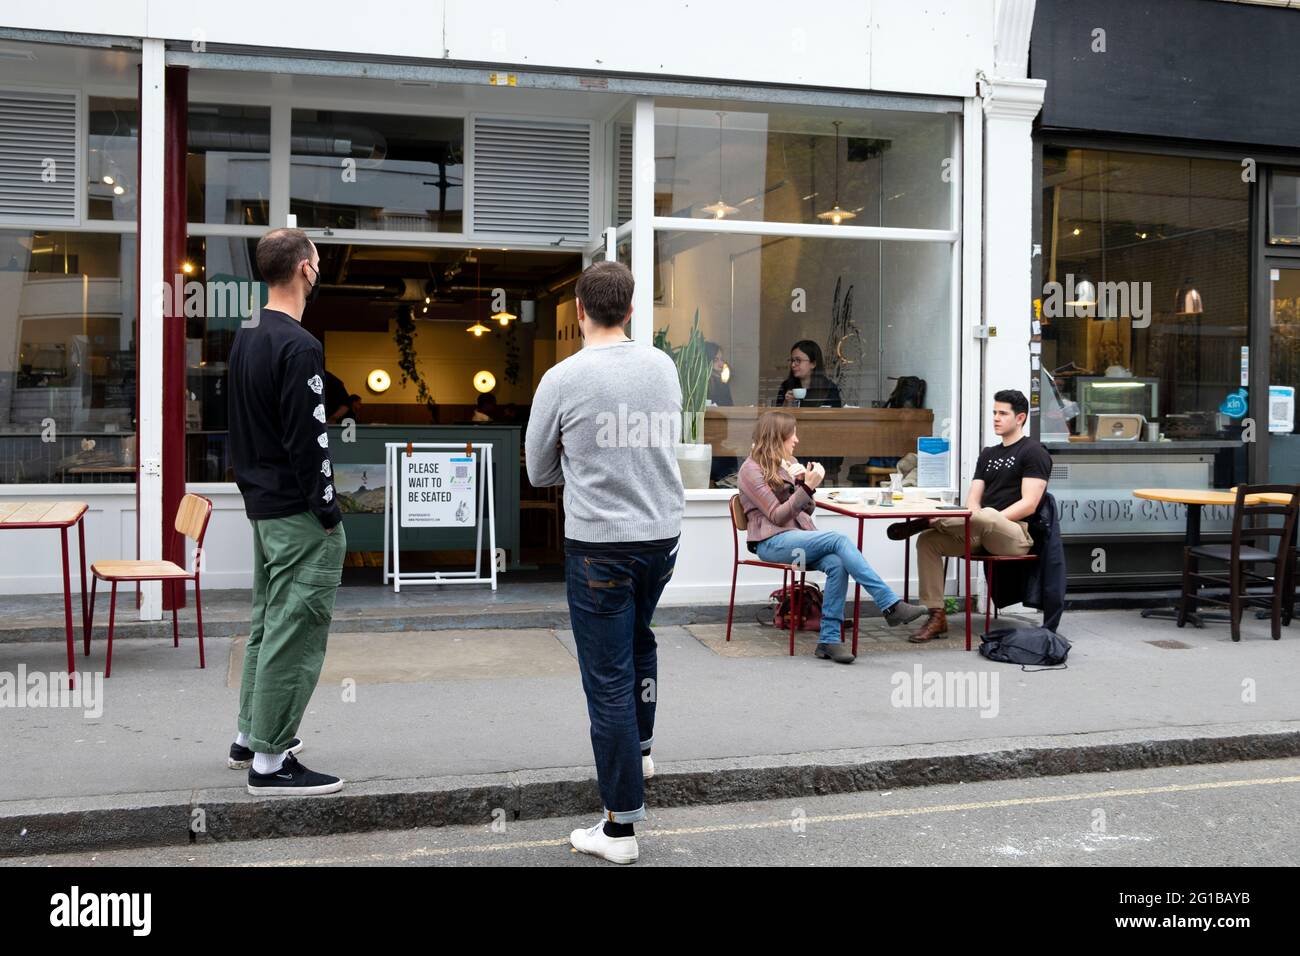 Des hommes qui font la queue dans la file d'attente de la prise de distance sociale à l'extérieur du café Prufrock pendant la pandémie Covid 19 à Exmouth Market Londres Angleterre KATHY DEWITT, Royaume-Uni Banque D'Images